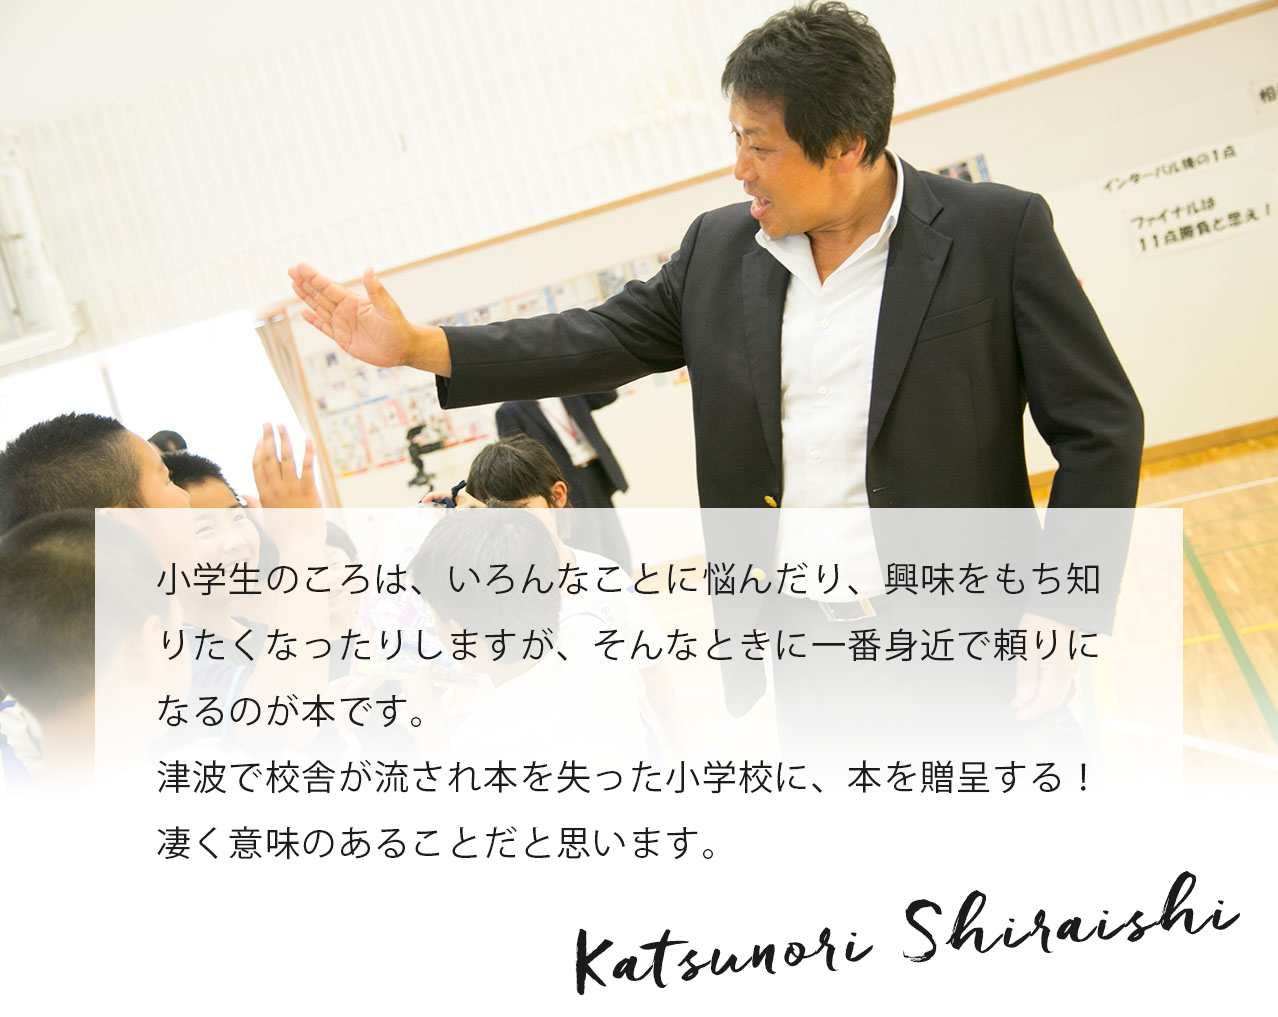 子どもたちのリアルな笑顔、そして、子どもたちに未来を託す大人たちの笑顔に接したとき、ニュースキンの心を深く感じることができました。ニュースキンに携わることができ、誇りと感謝でいっぱいです。 Katsunori Shiraishi